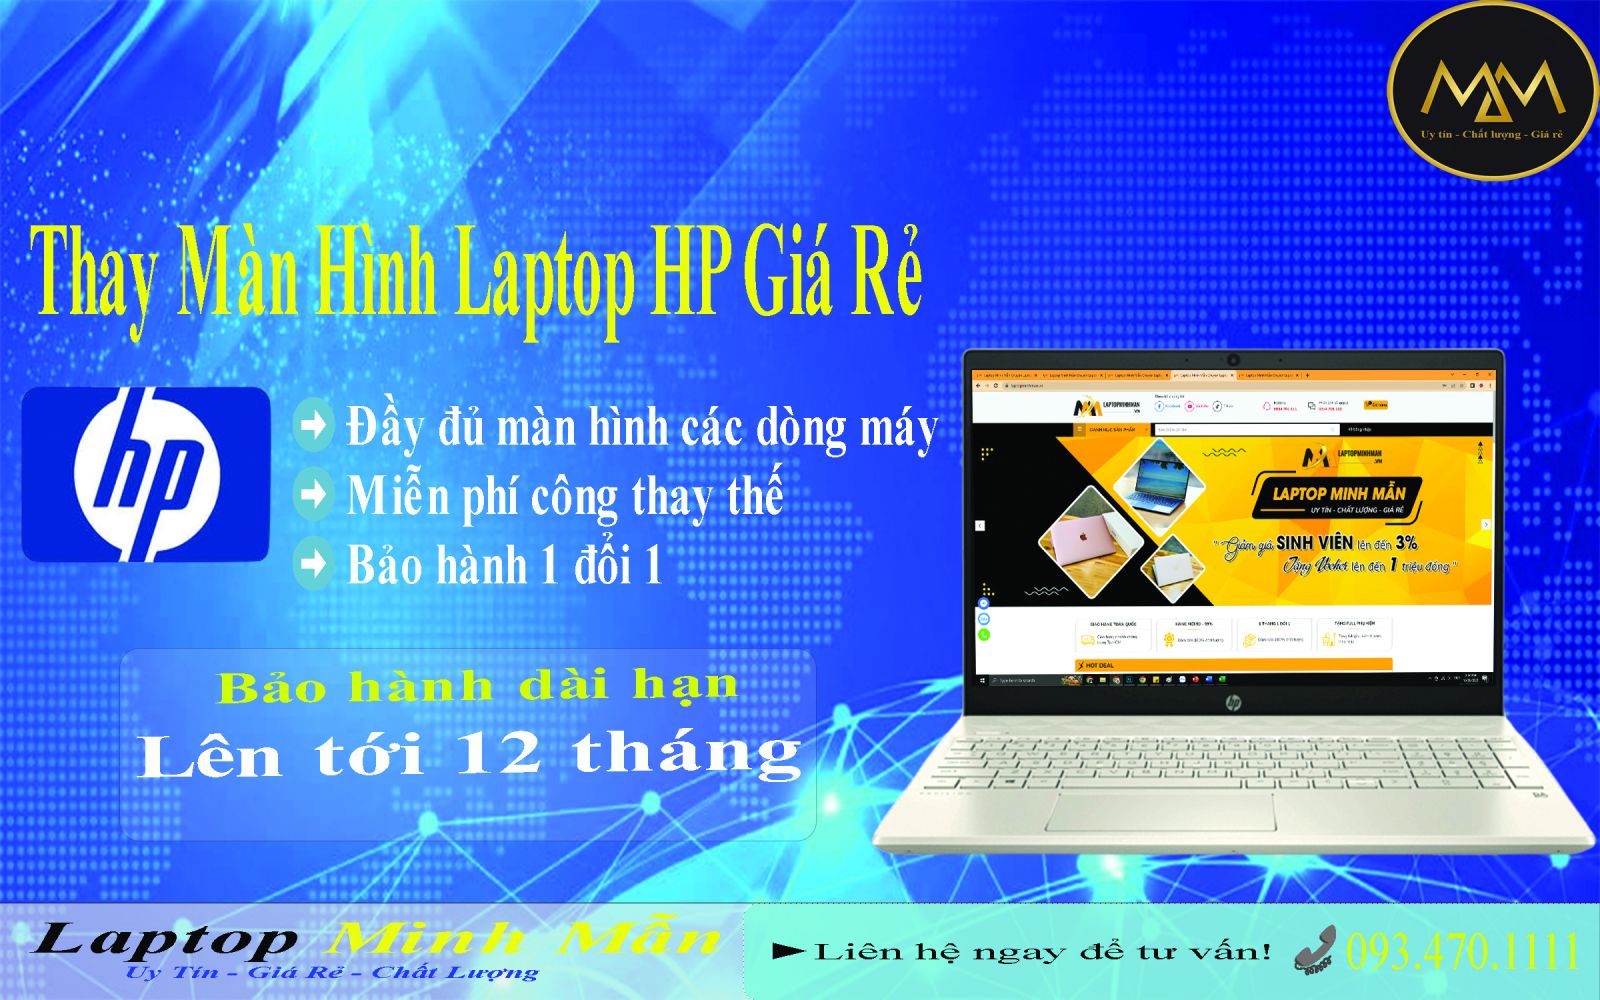 Thay-màn-hình-laptop-HP-giá-rẻ